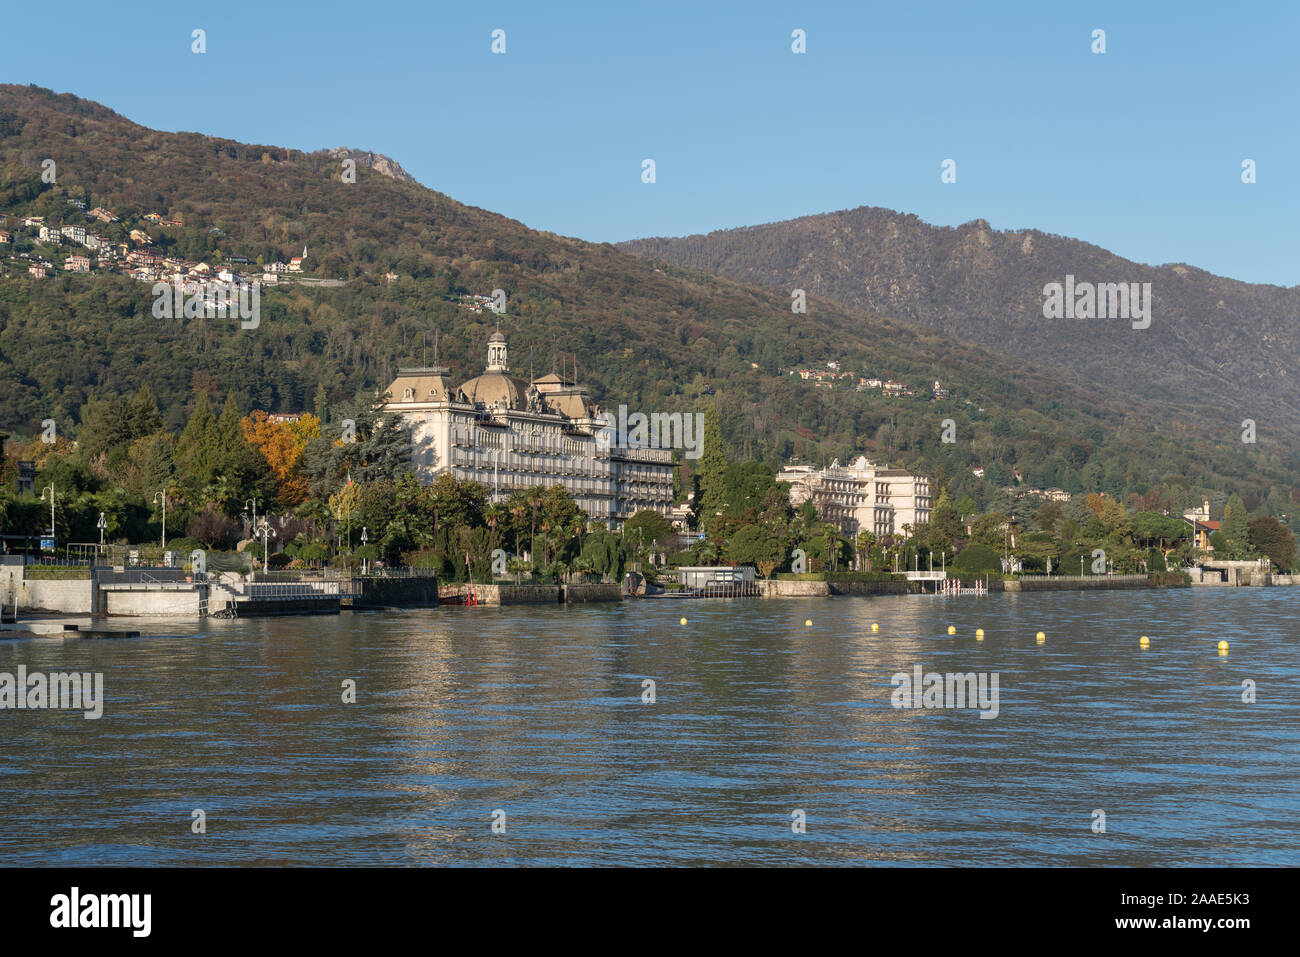 Grand Hotel des Iles Borromees in Stresa, famous tourist destination on Lake Maggiore in Northern Italy Stock Photo